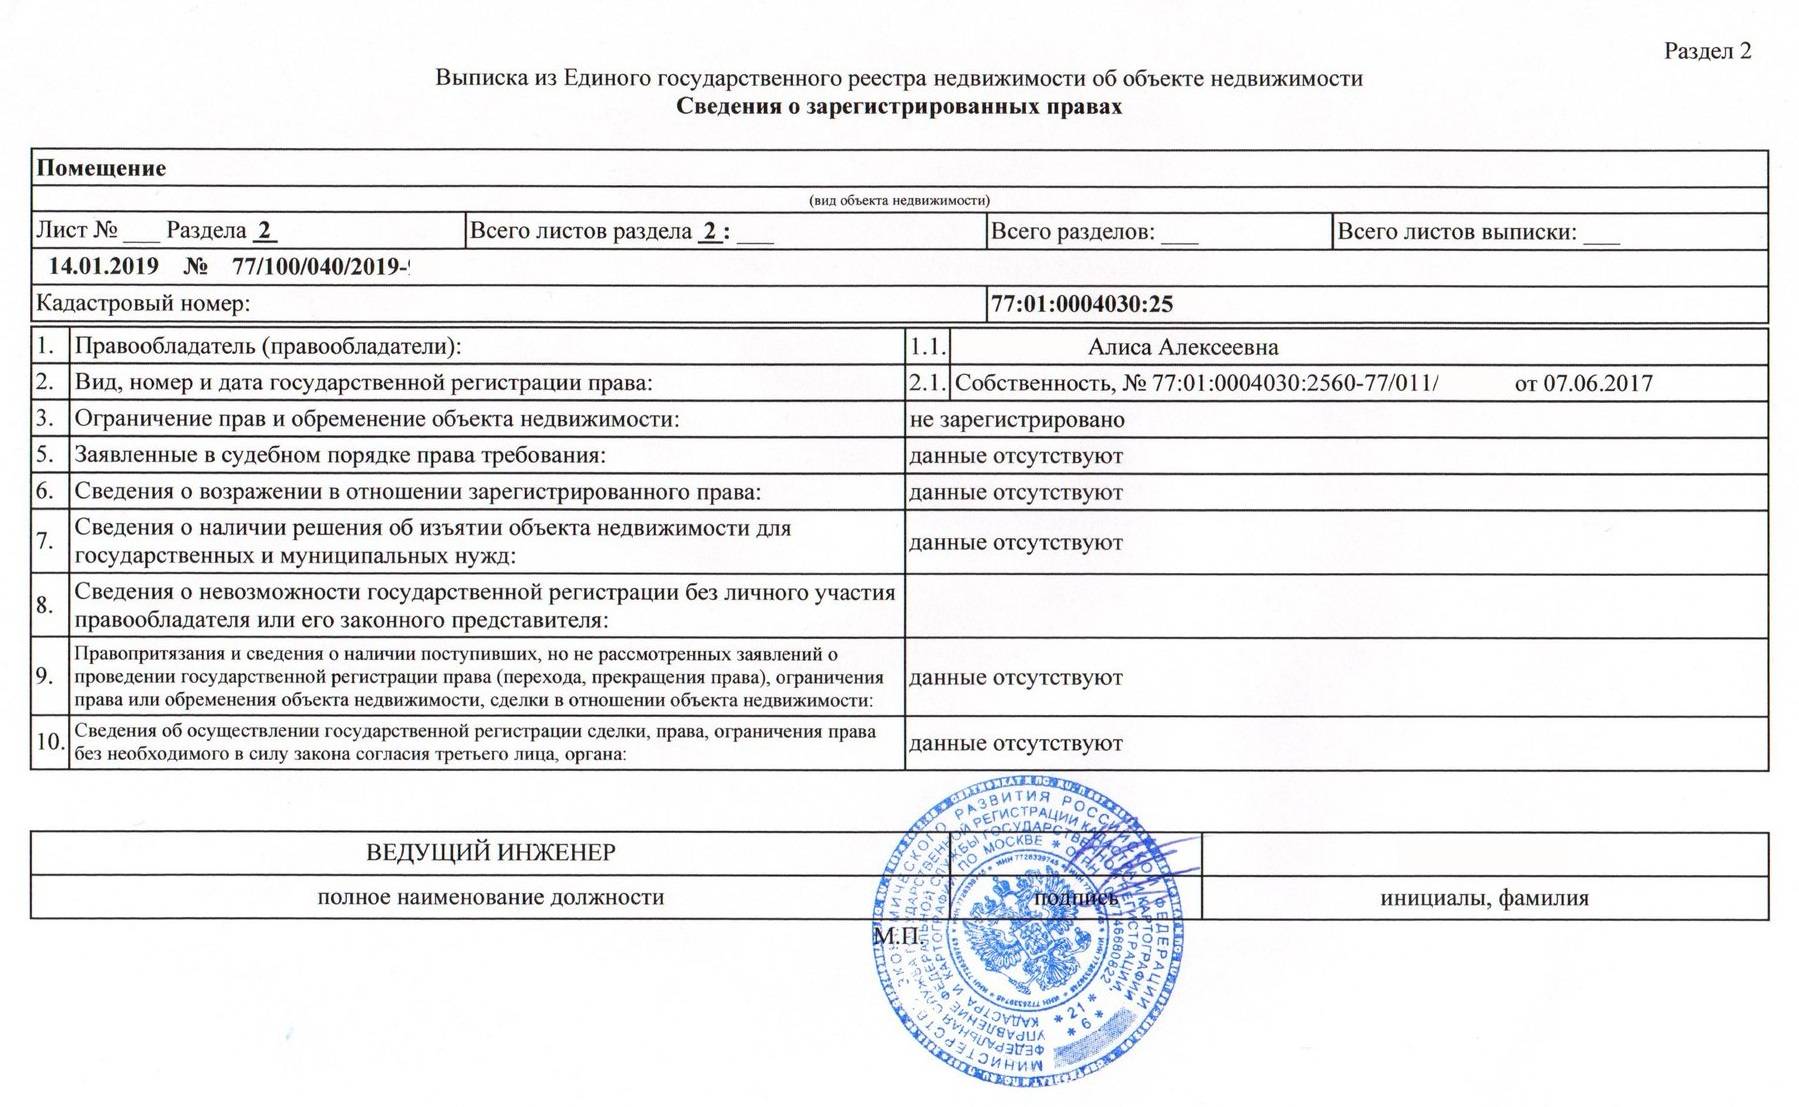 Государственная регистрация договора аренды земельного участка в росреестре - сроки и стоимость